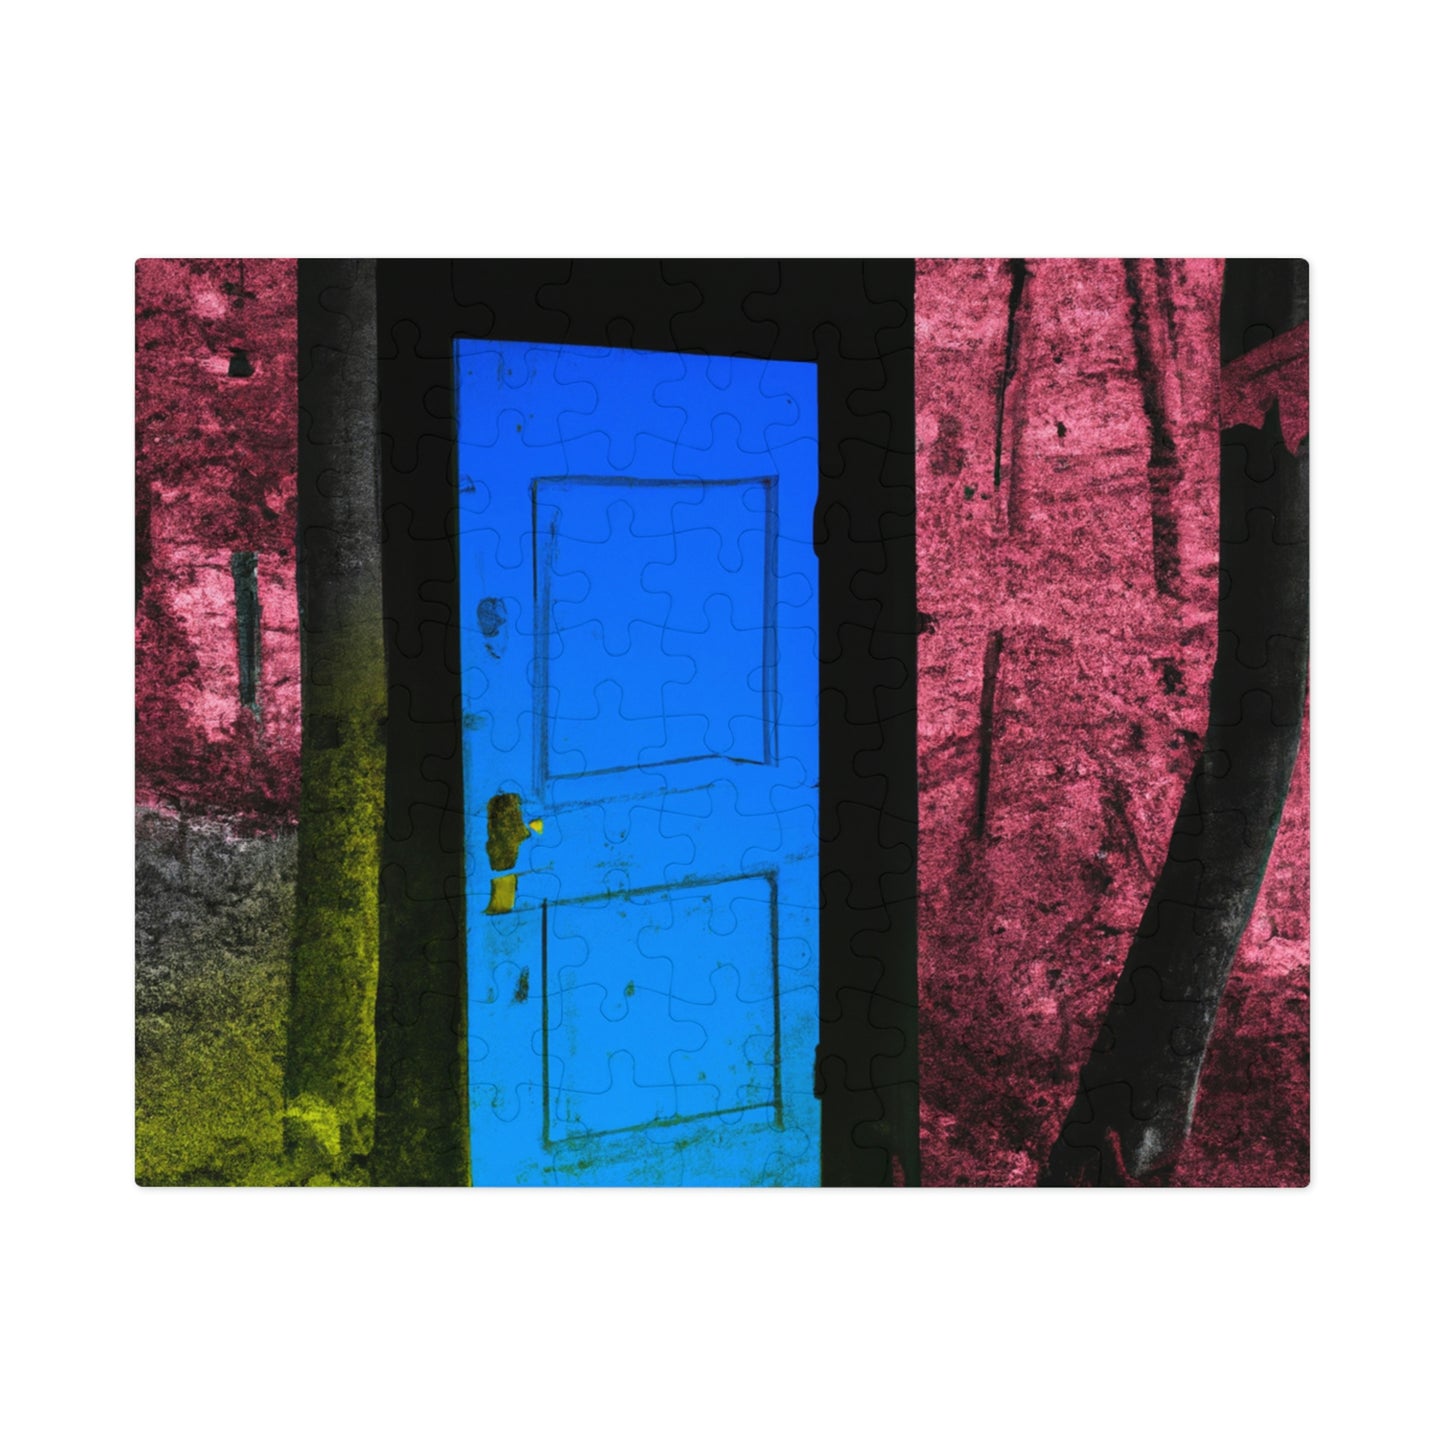 La enigmática puerta del bosque - El rompecabezas alienígena